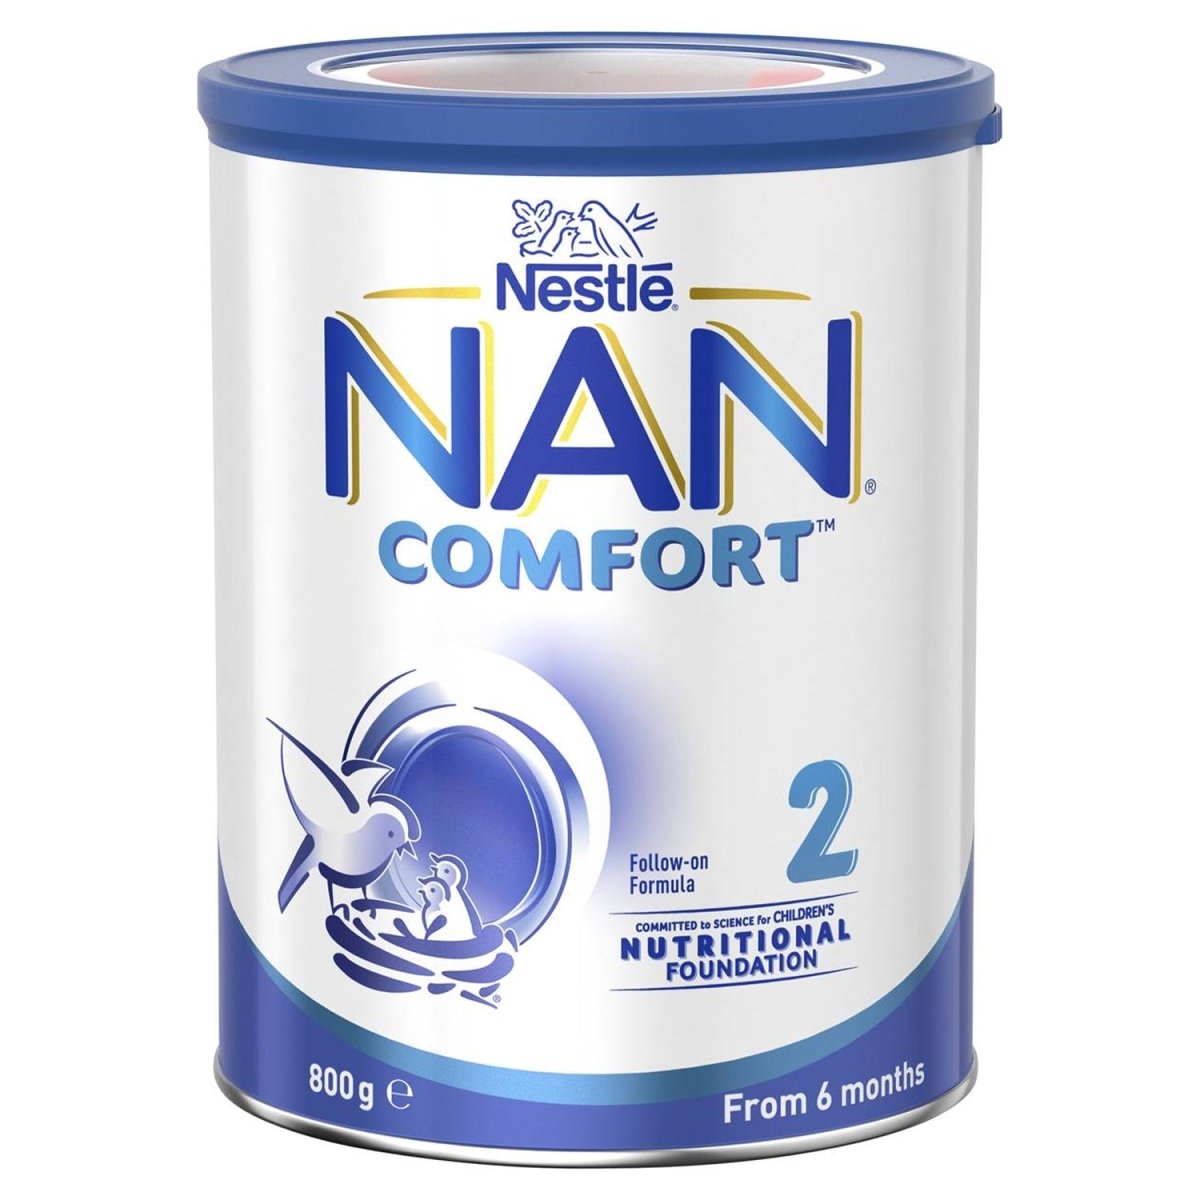 Nestlé NAN Comfort 2 6-12 Months Follow-On Formula Powder 800g